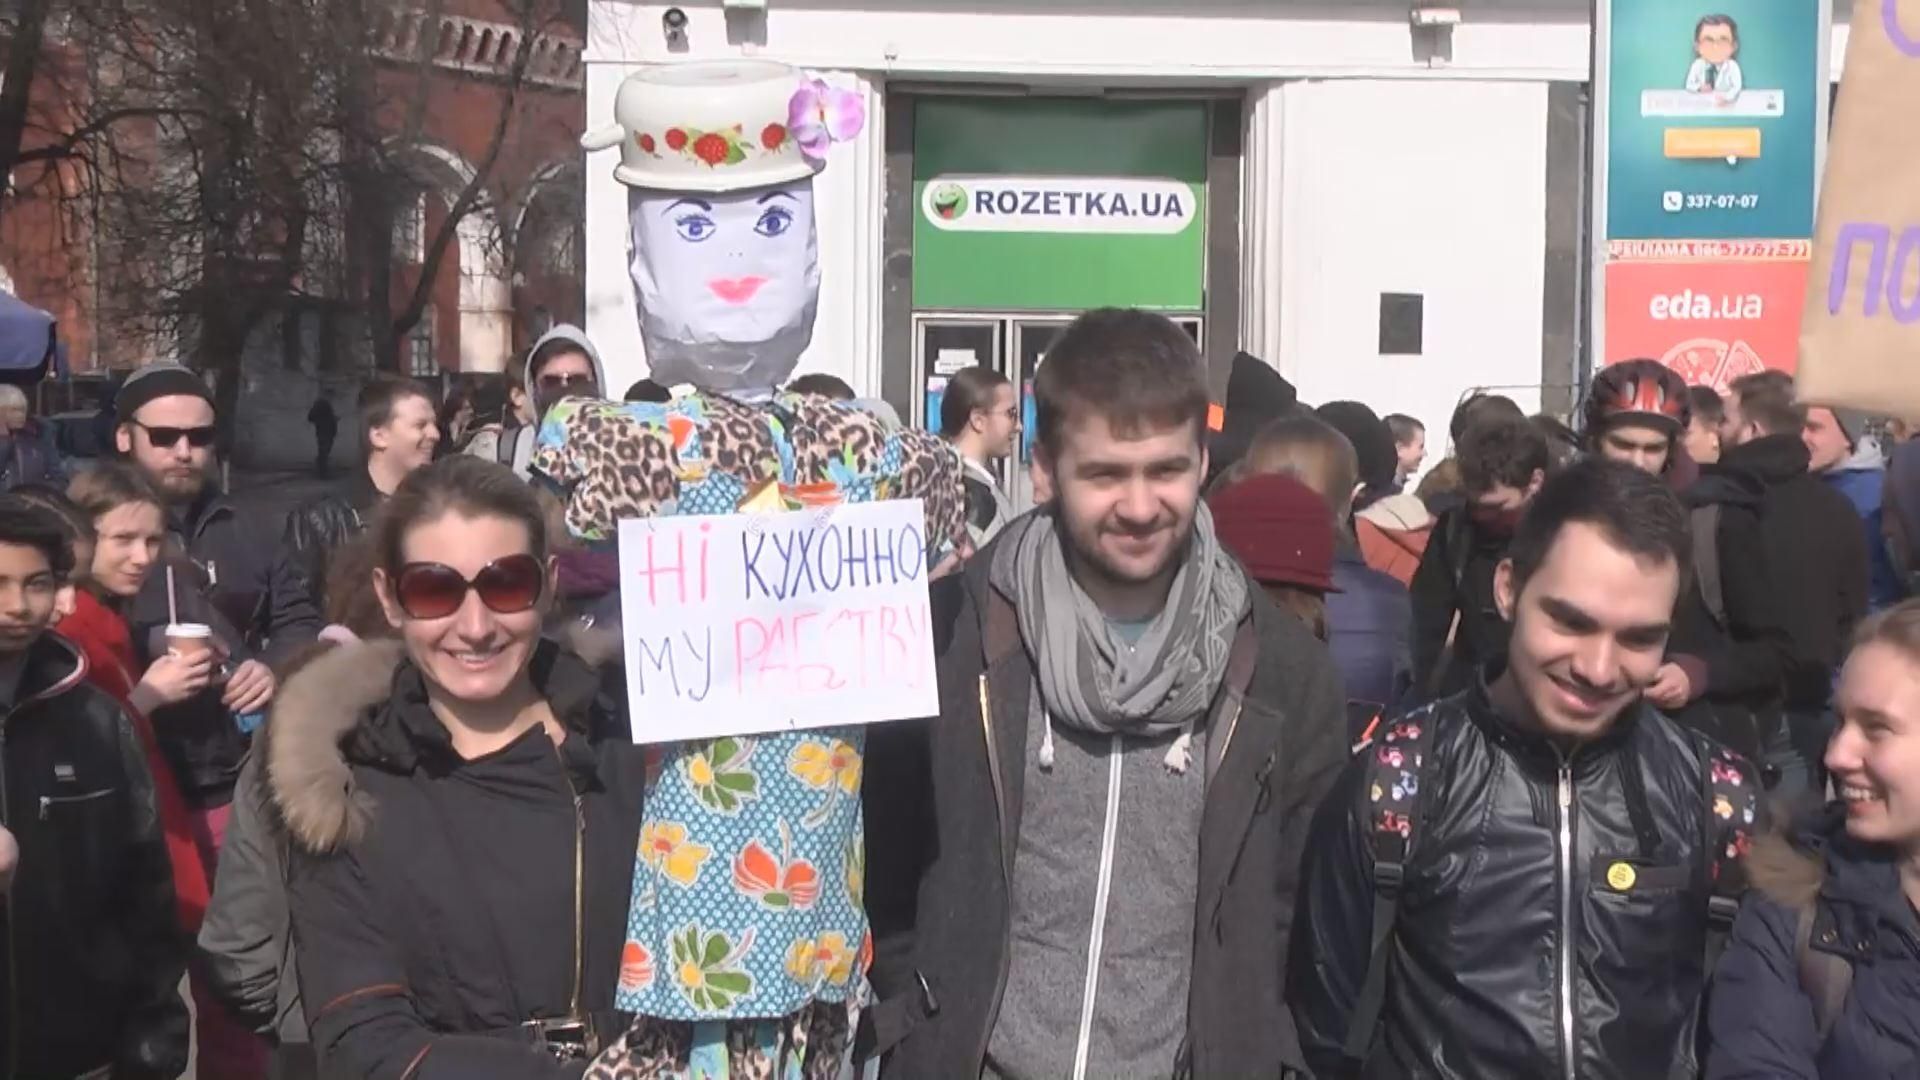 Ні кухонному рабству: у Києві відбувся марш фемінізму